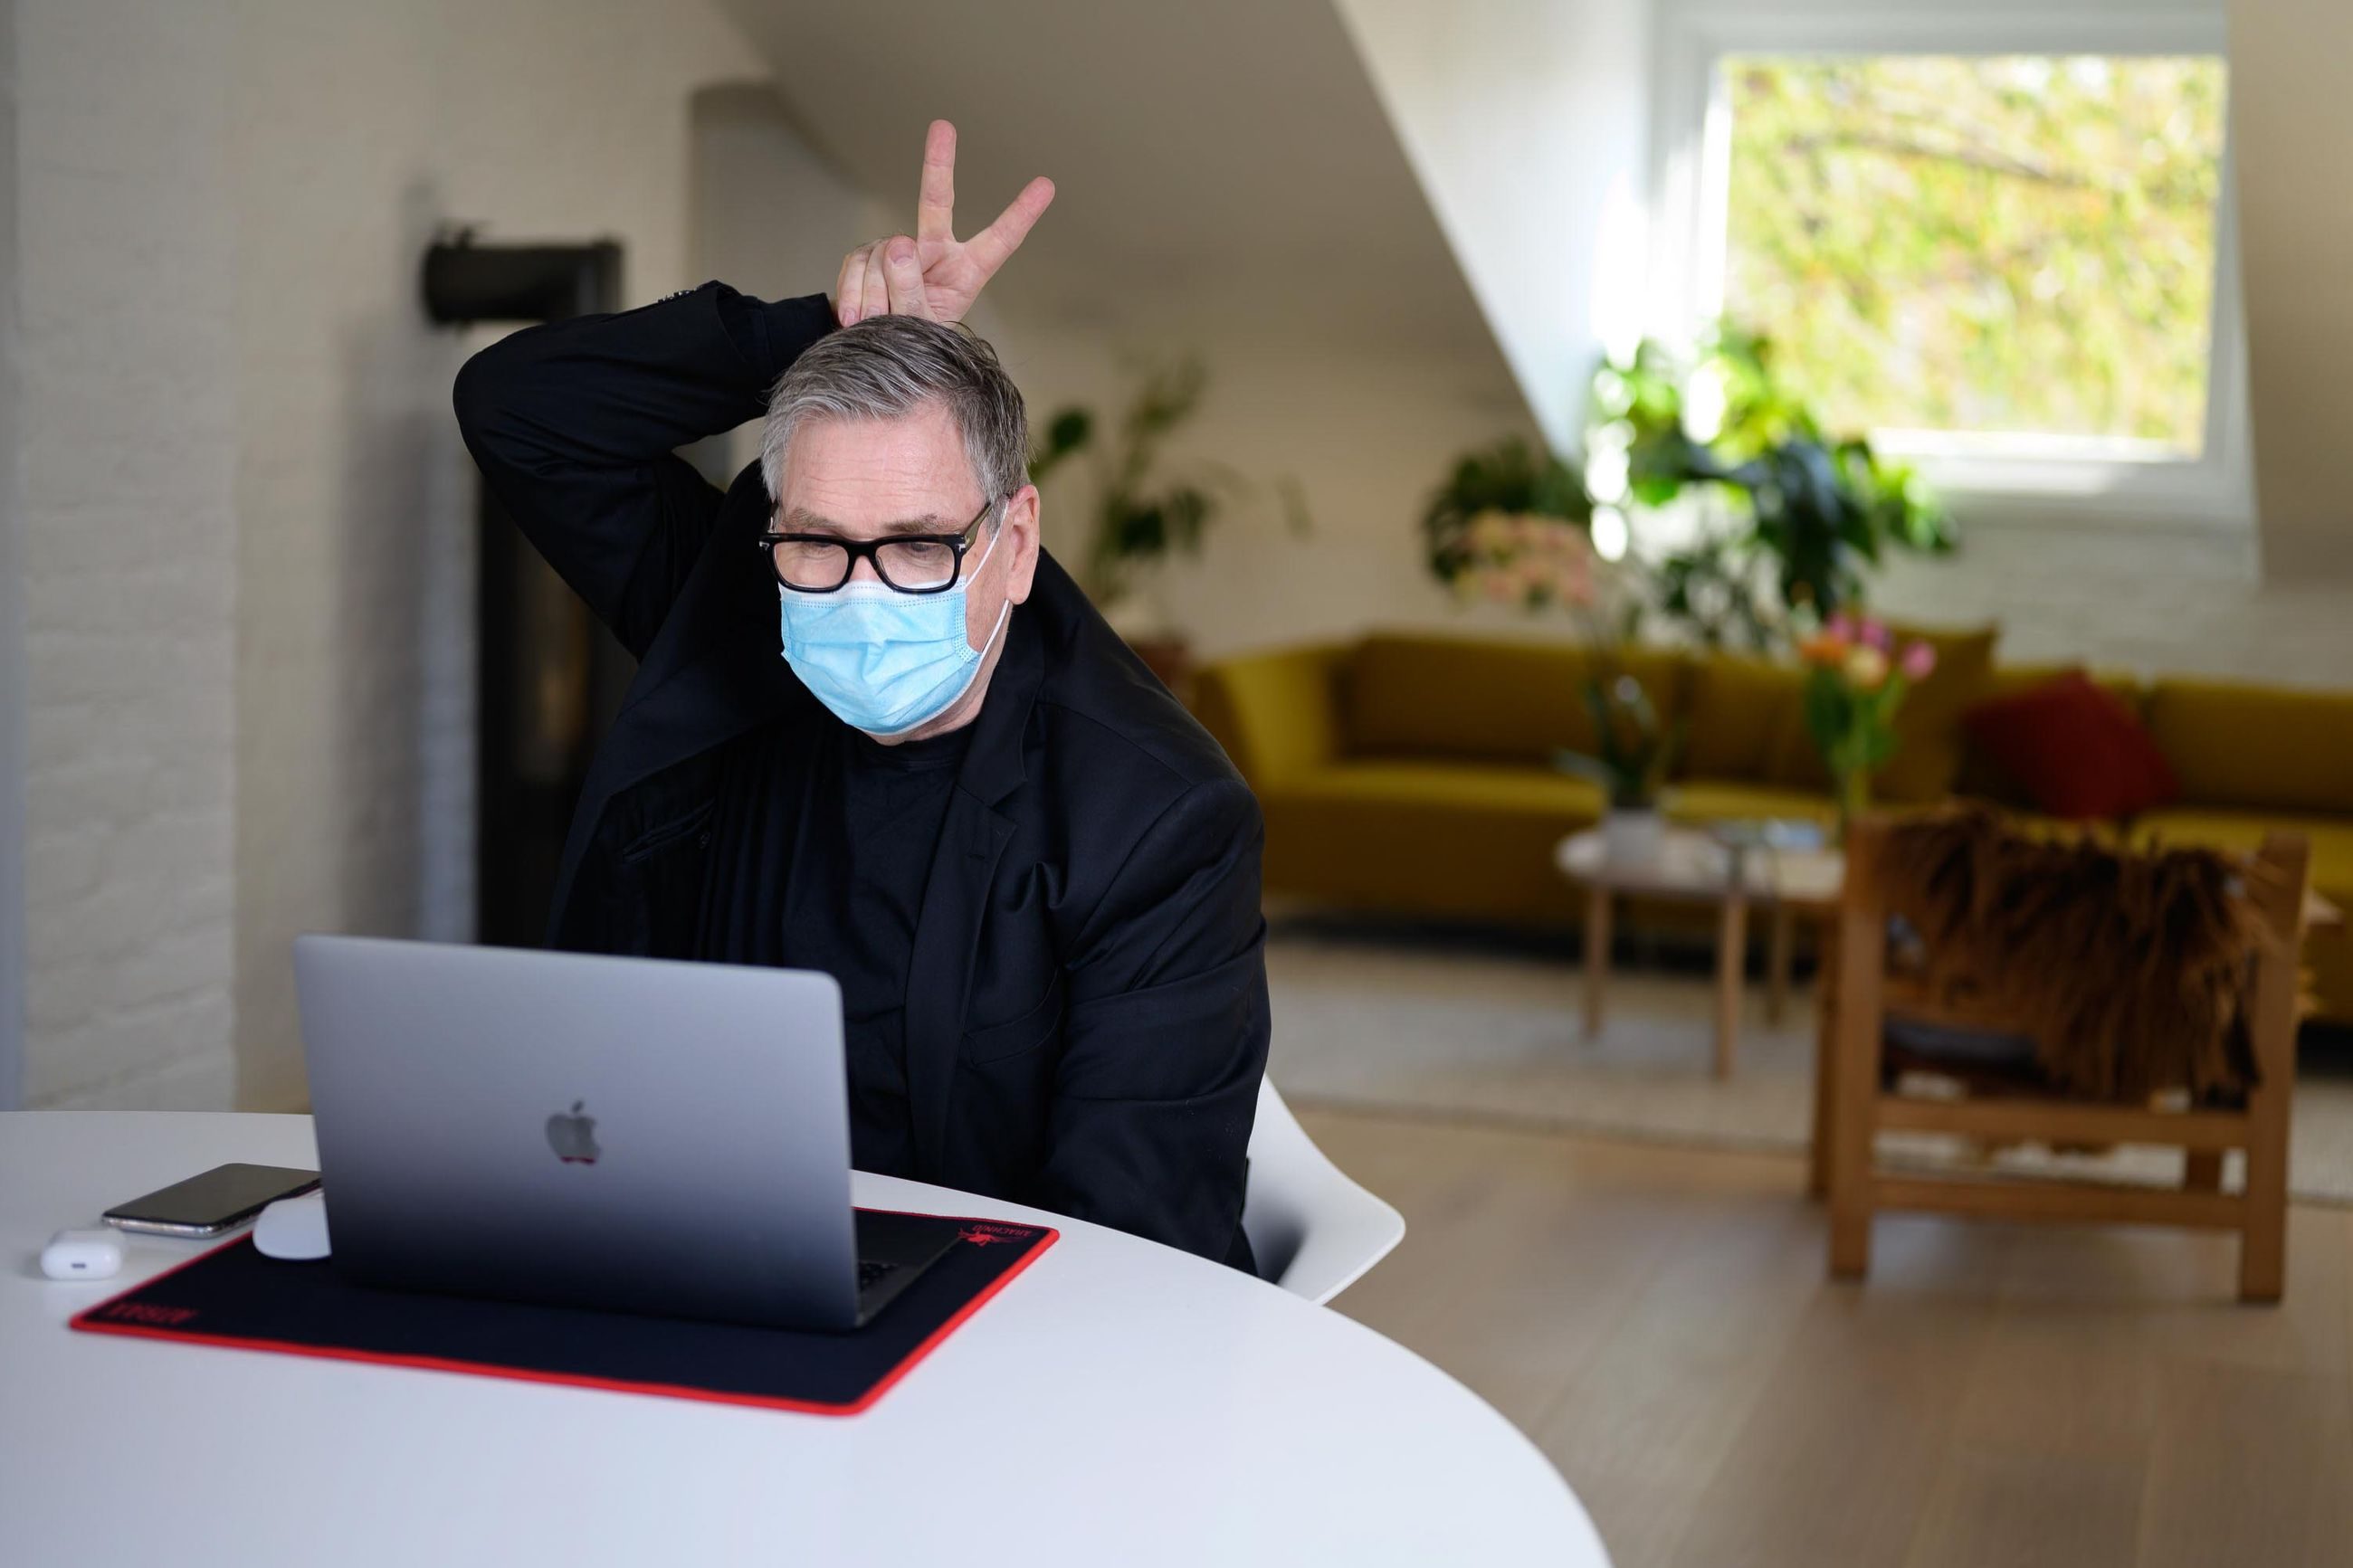 Mann foran laptop med munnbind som holder to fingre, i peacetegn, over eget hode